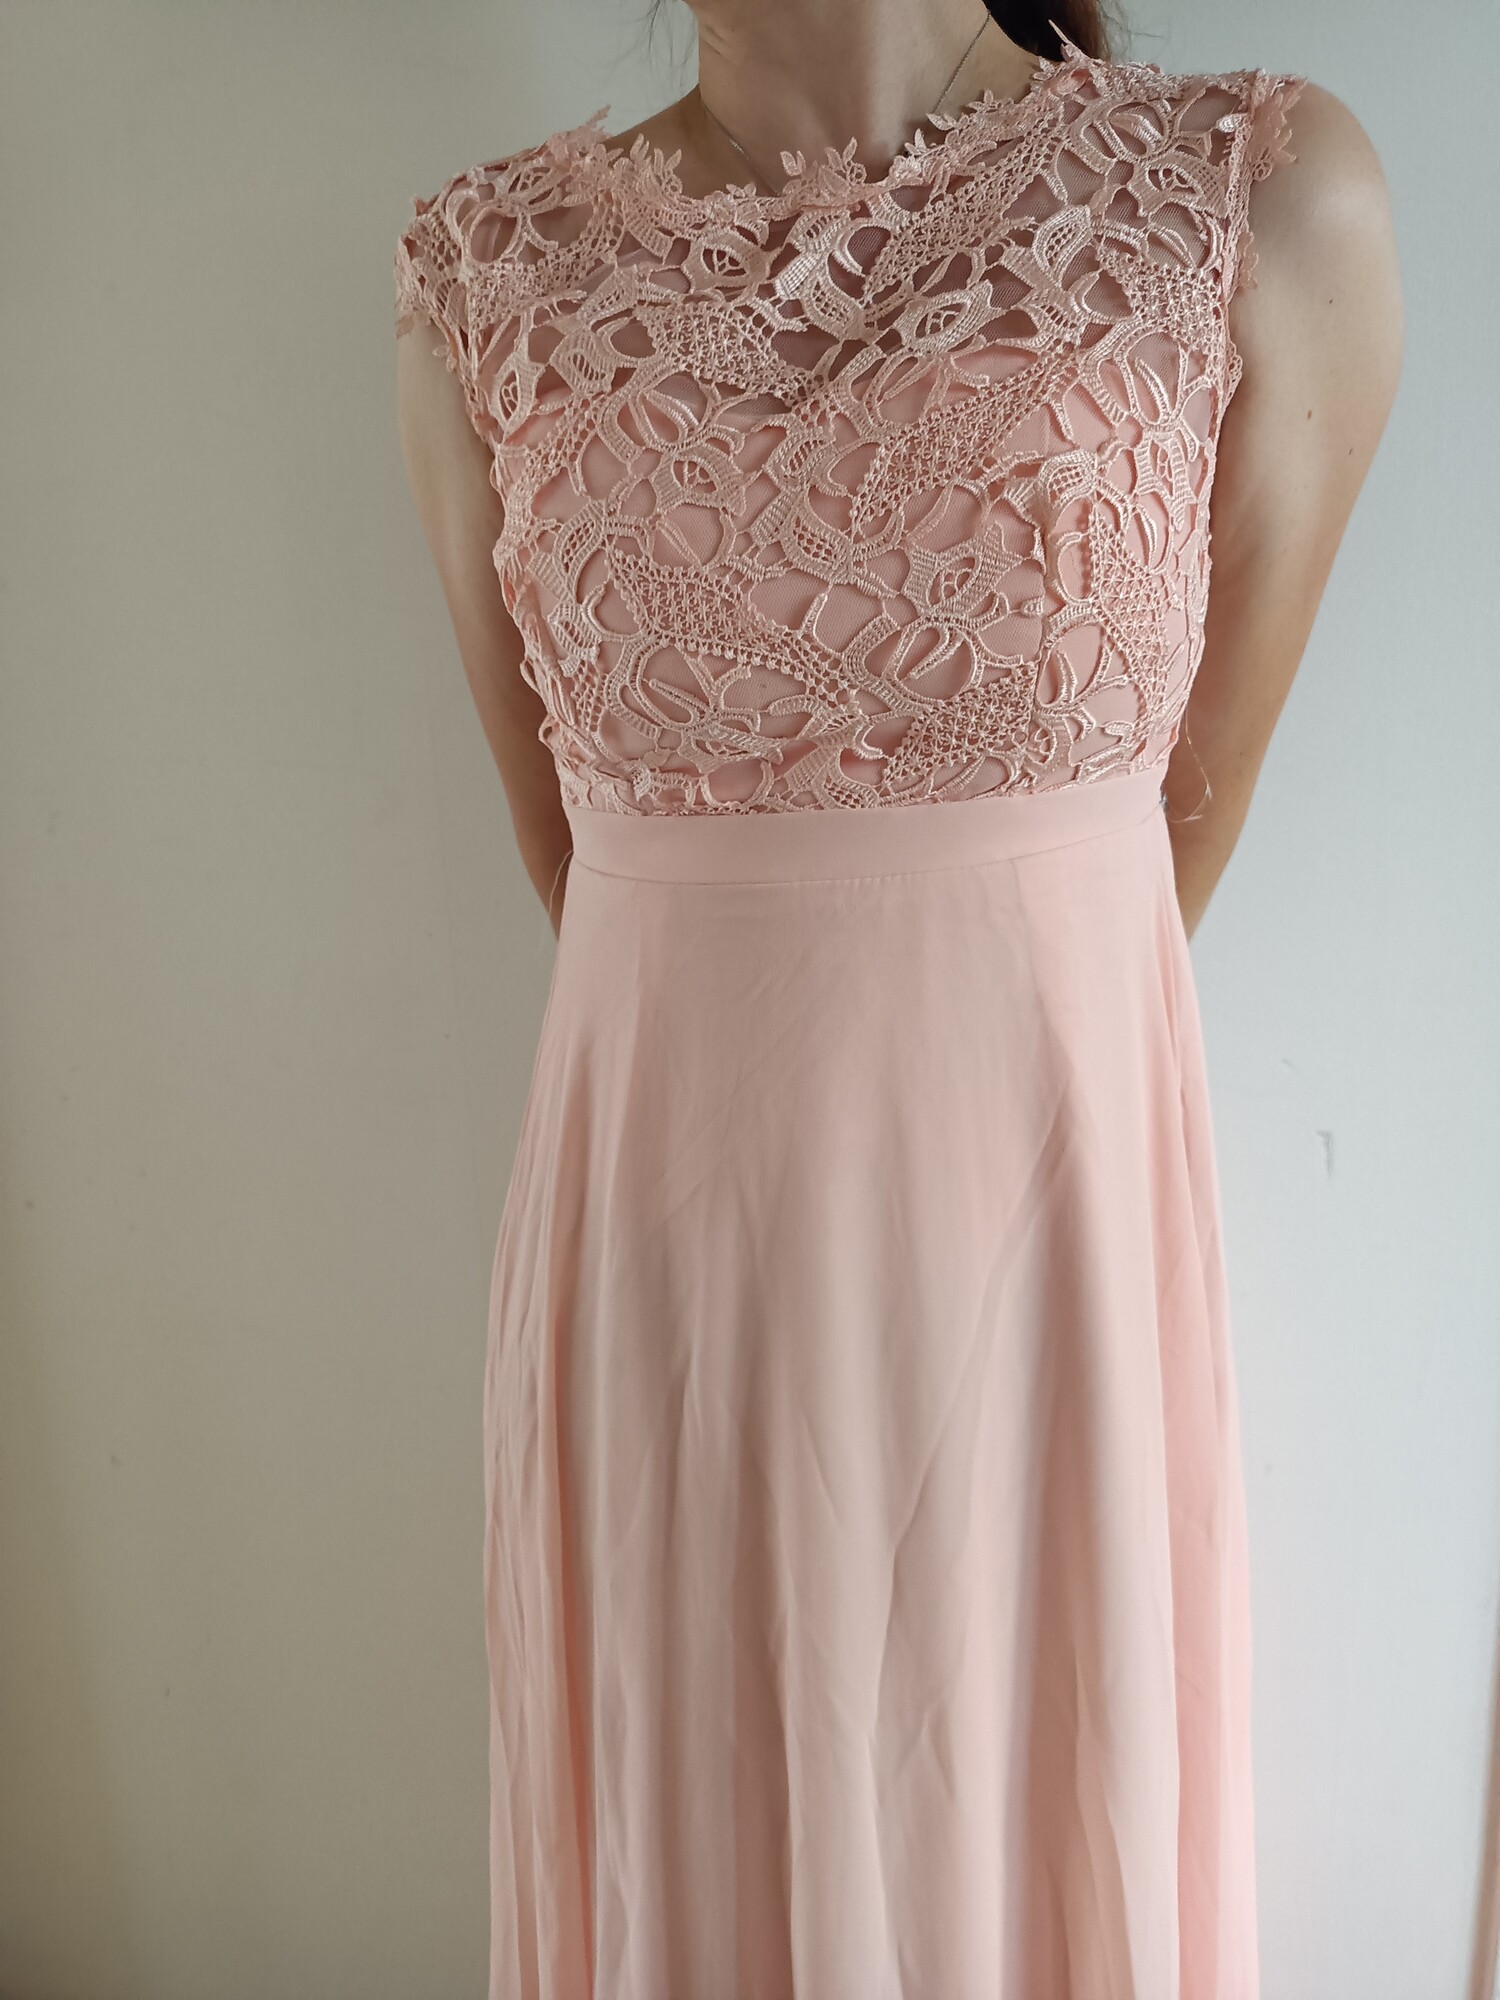 Dámské šaty dlouhé Lenka korálově růžové - EVA&LOLA S